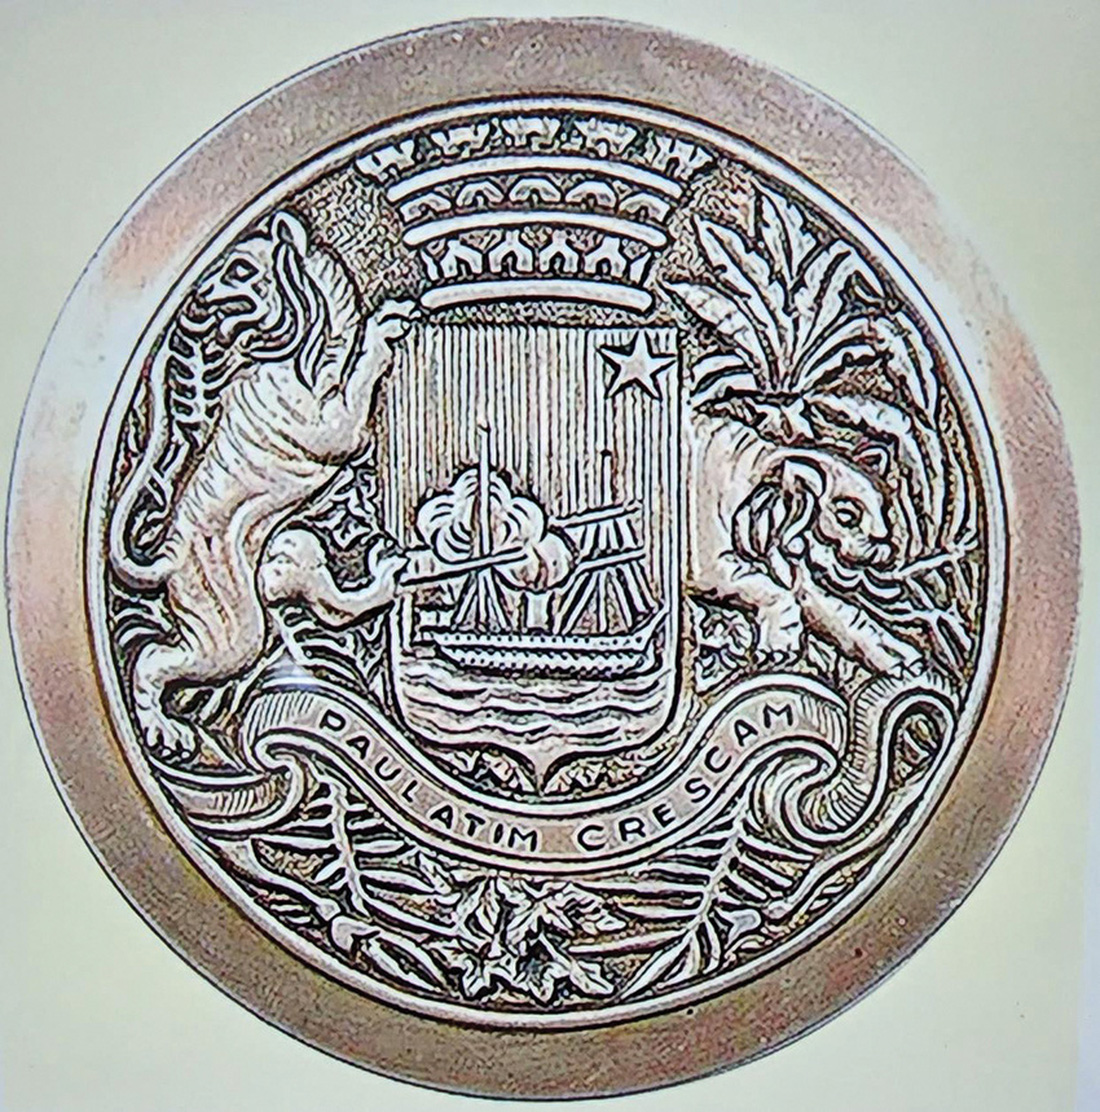 Biểu trưng Sài Gòn thời Pháp xuất hiện trên kỷ niệm chương Hội chợ Đông Dương 1942 - Ảnh tư liệu